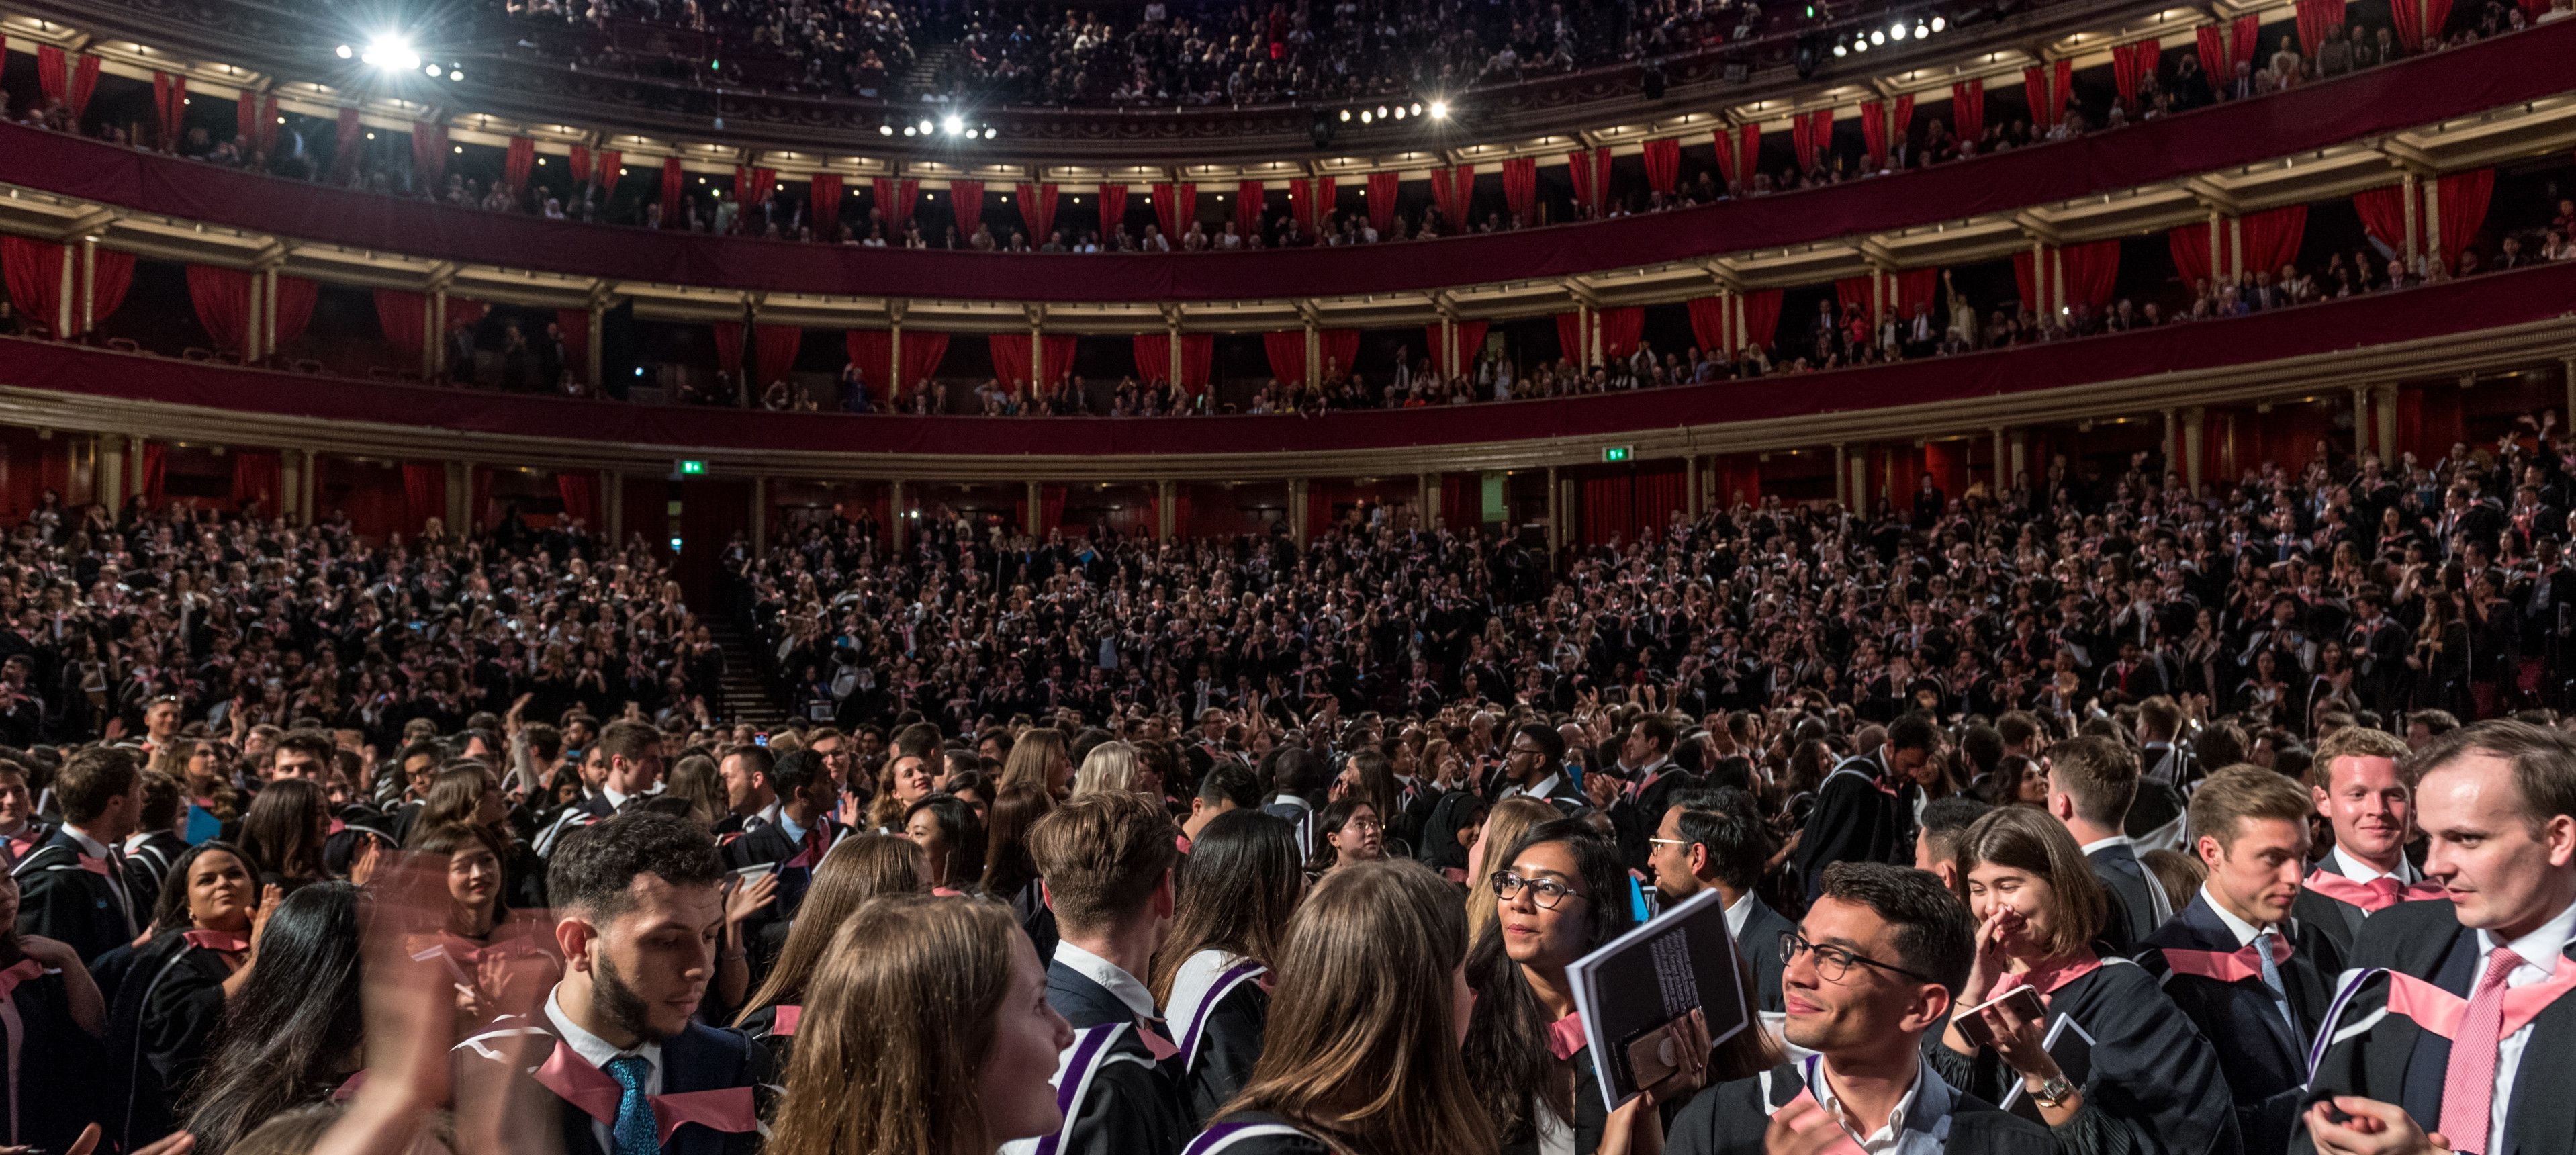 Students graduating at the Royal Albert Hall